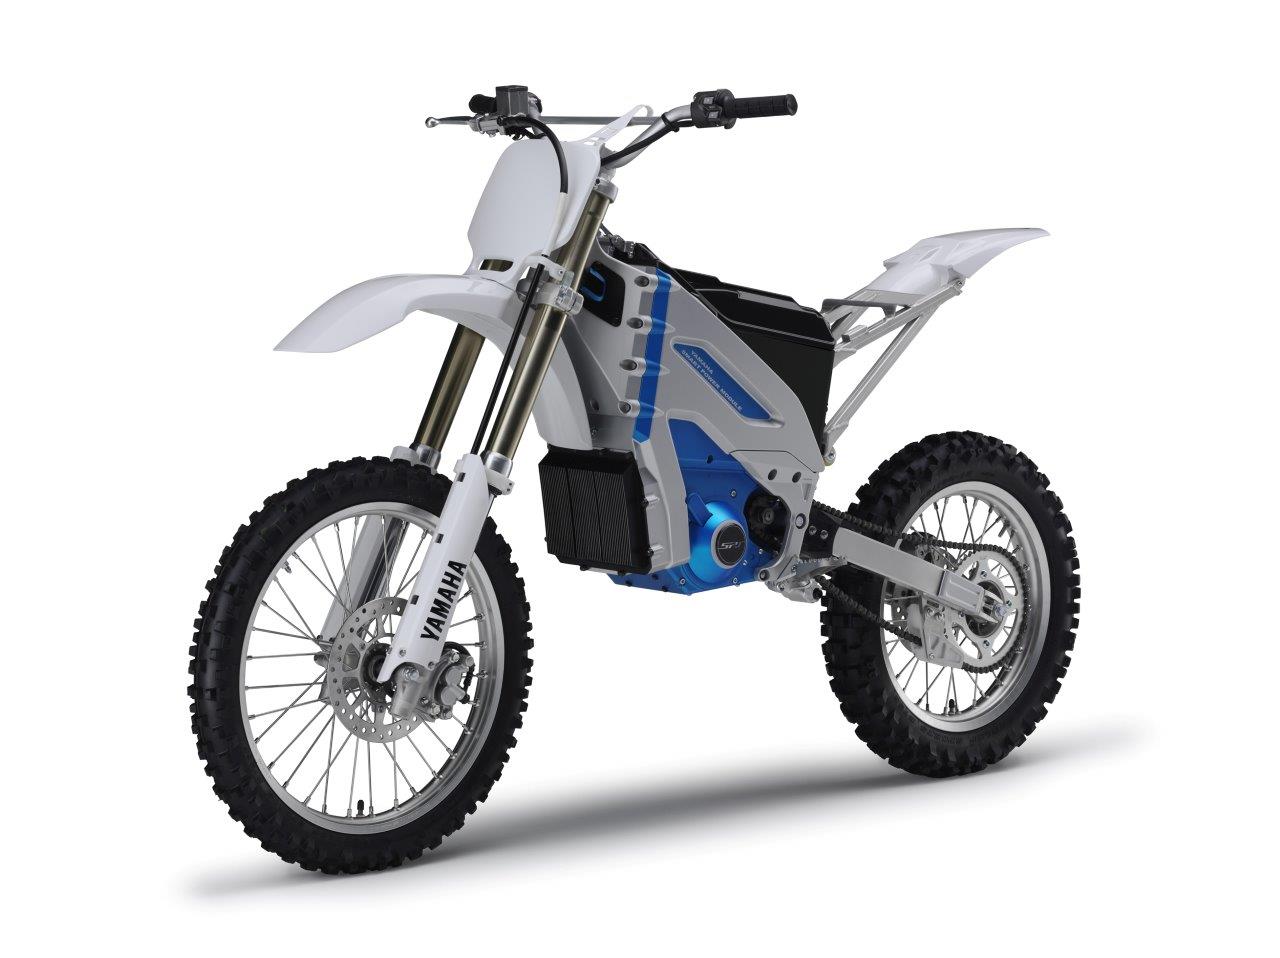 Yamaha concept bikes revealed